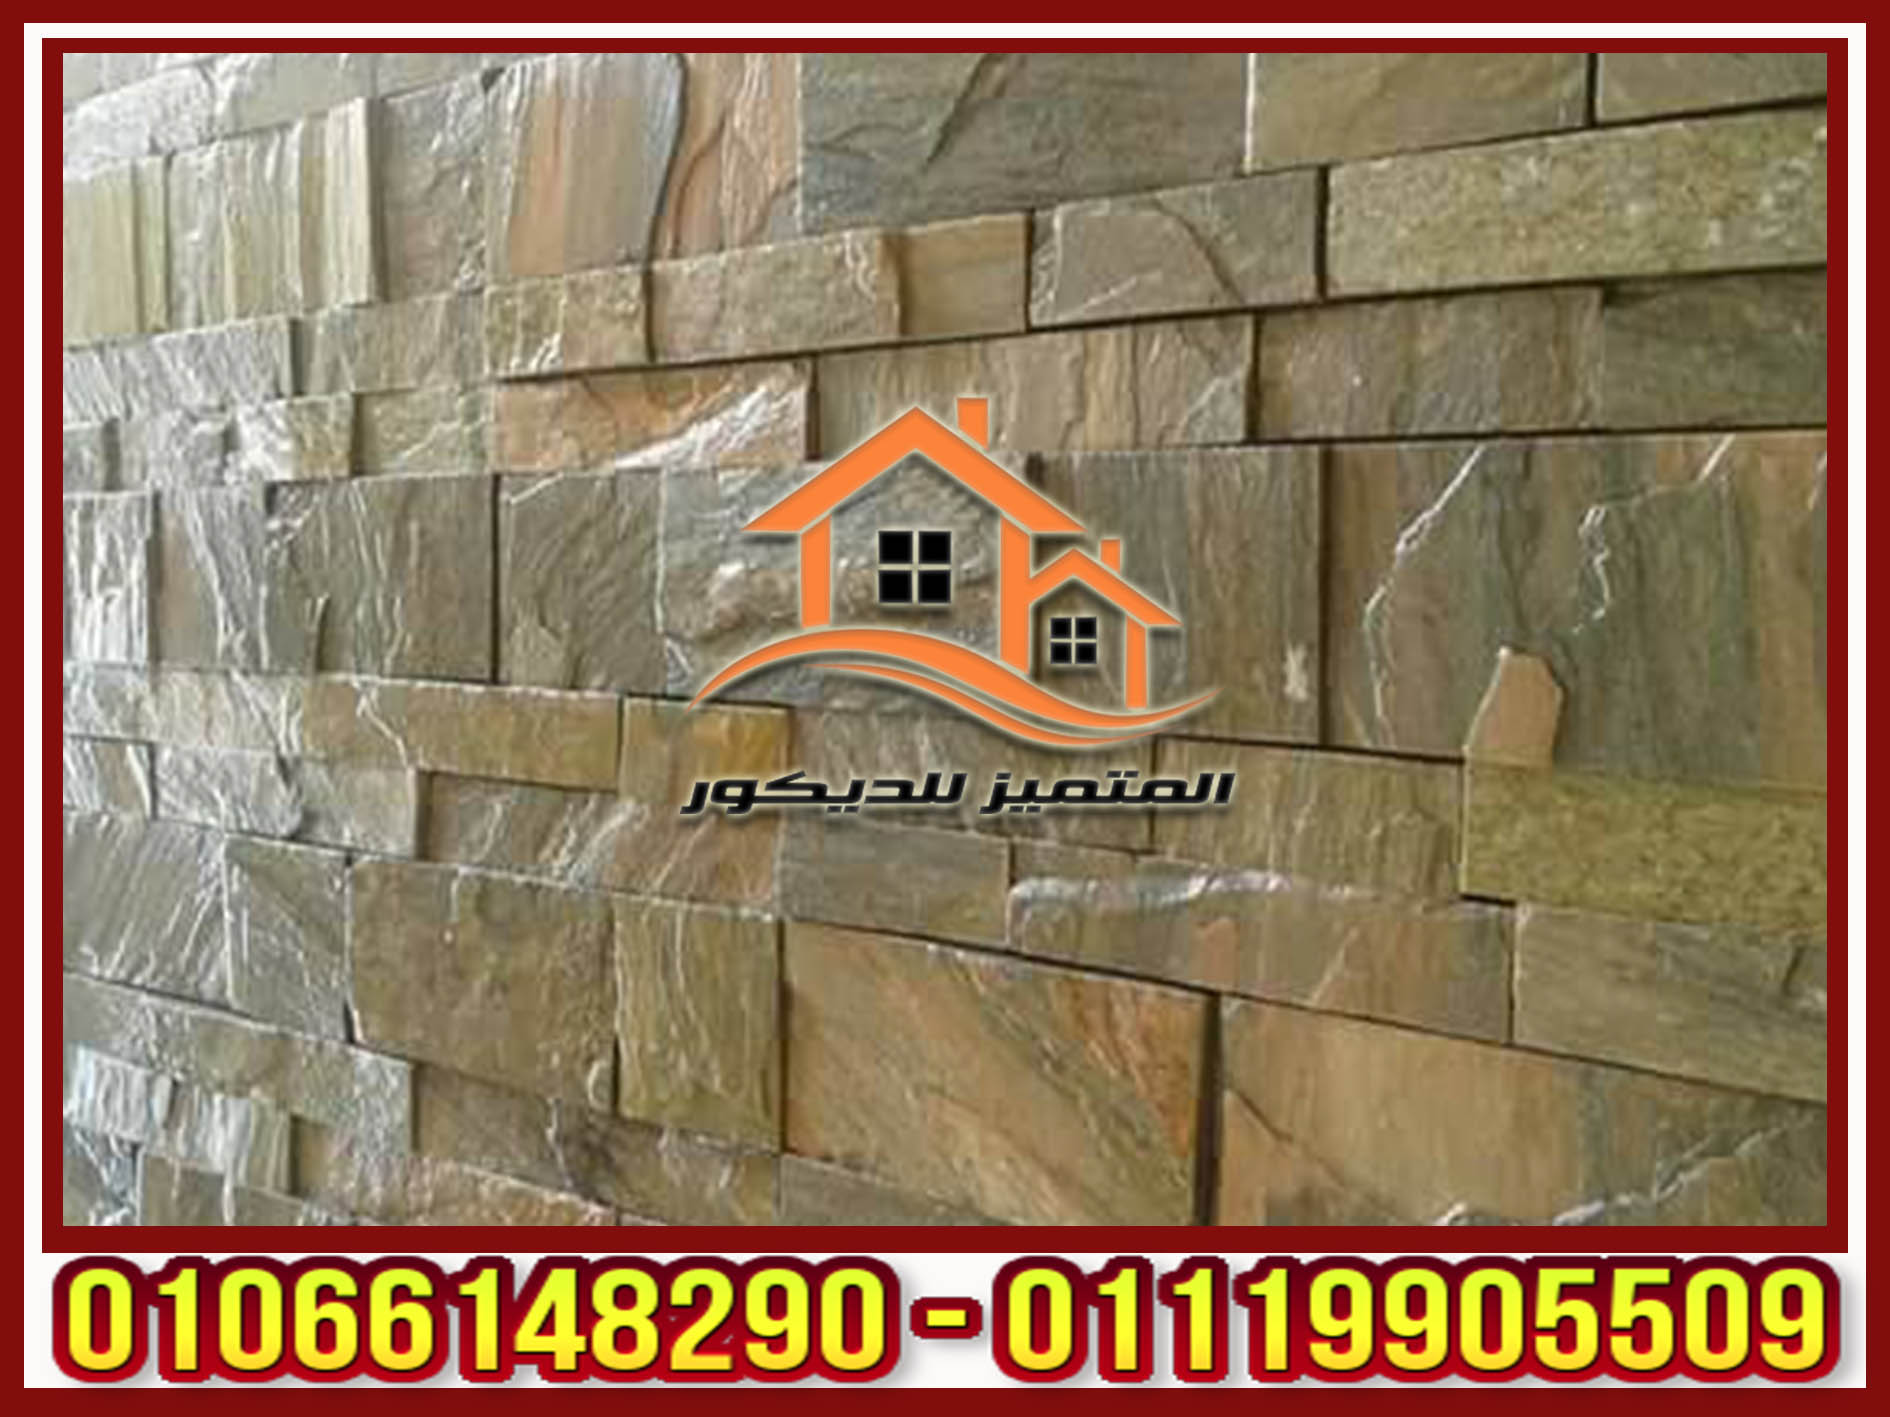 انواع حجر مايكا المناسبة لتزيين الحوائط الداخلية للشقق وواجهات المنازل وواجهات الفلل